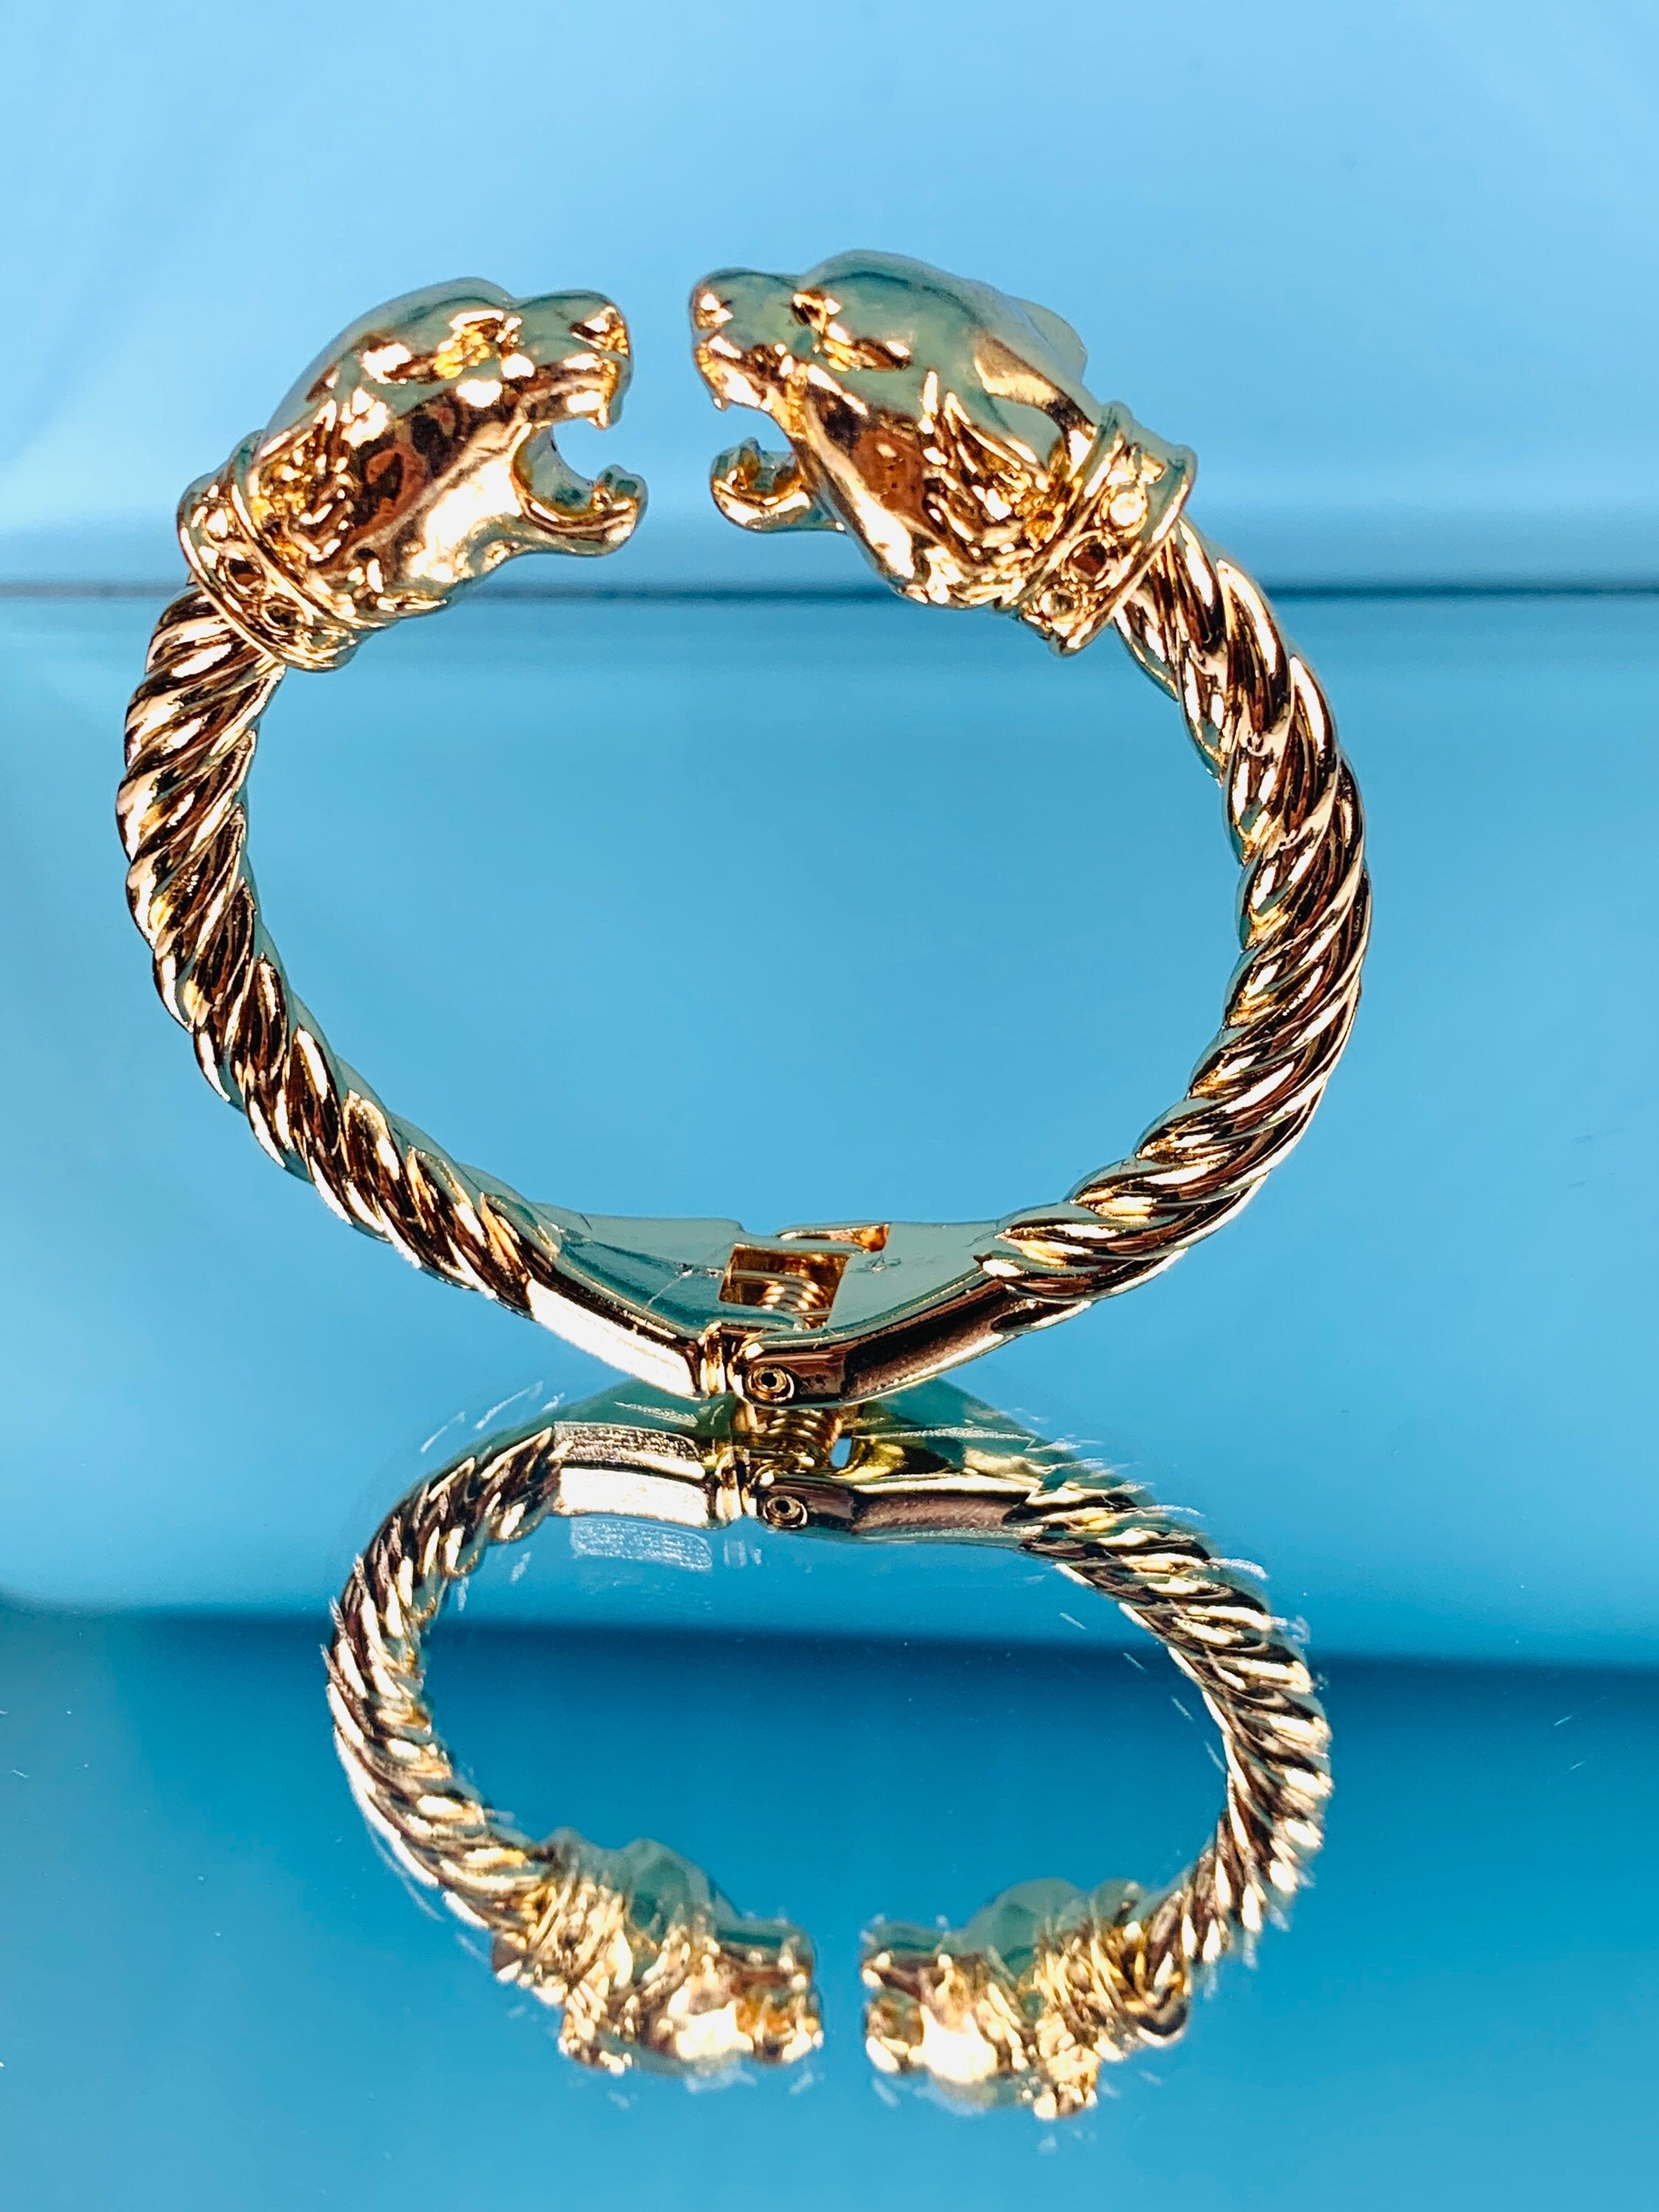 Cartier Men's Bracelet Boxed in Ojo - Jewellery, Lanth Services